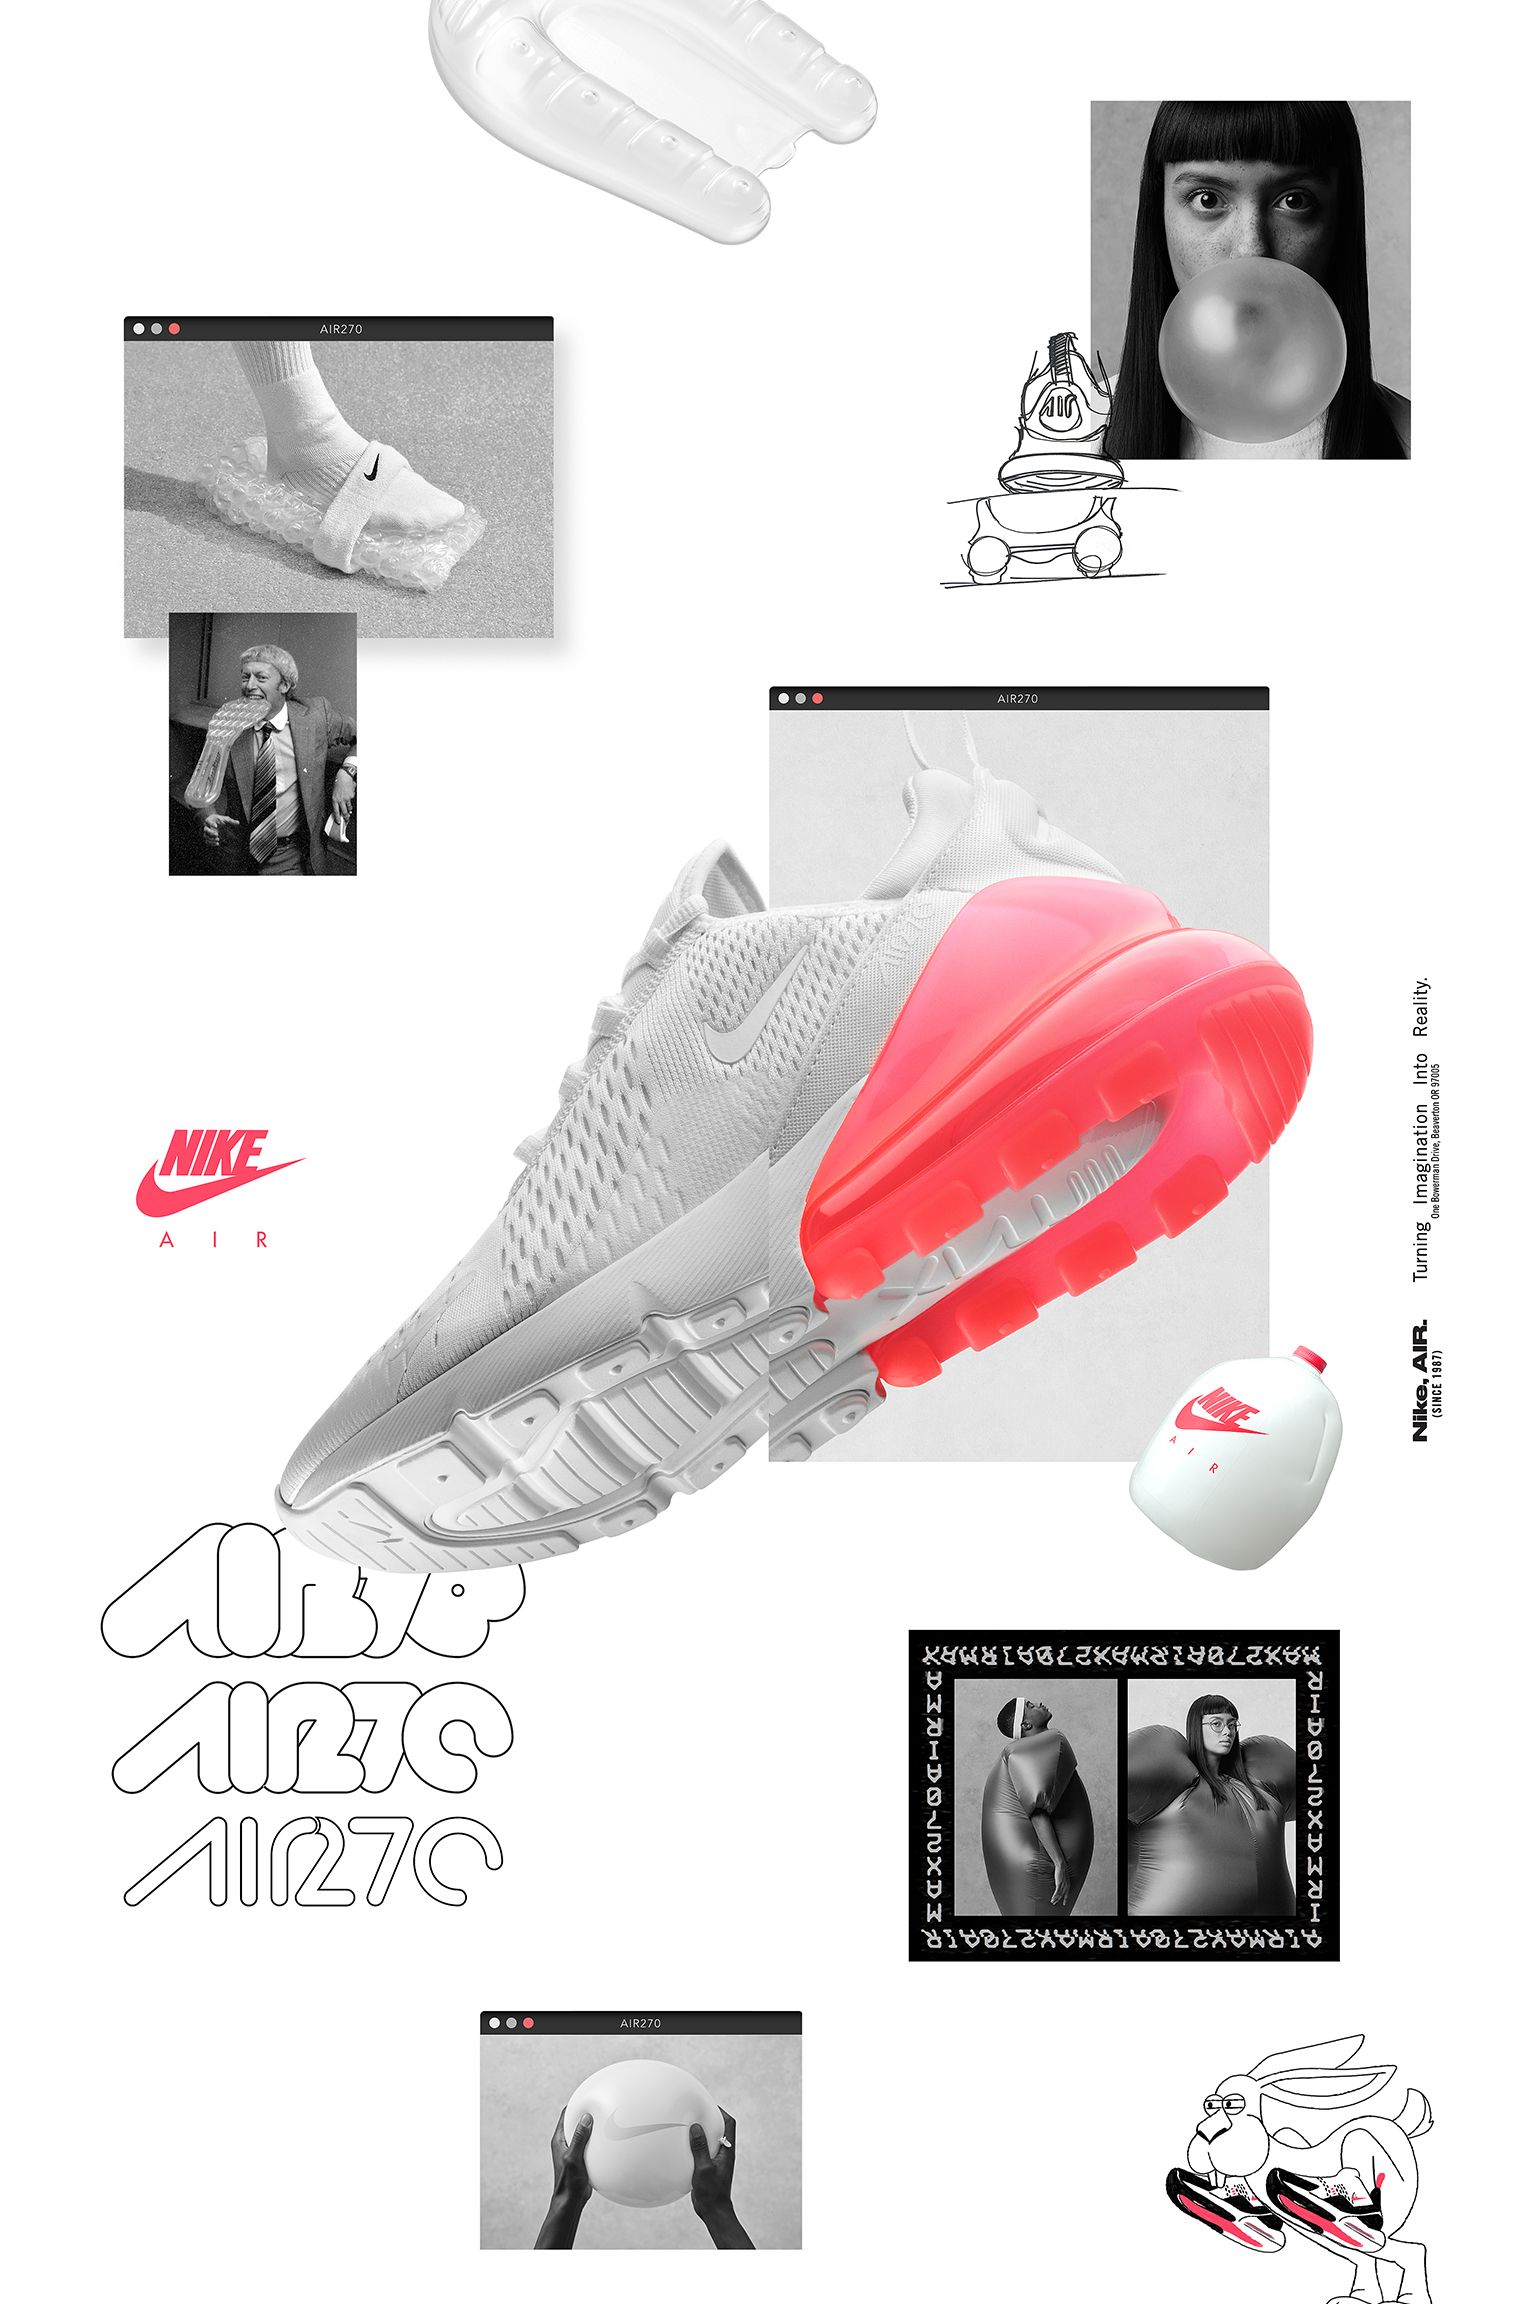 鍔 Addicted Fable Nike Air Max 270 White Pack 'Hot Punch' Release Date. Nike SNKRS